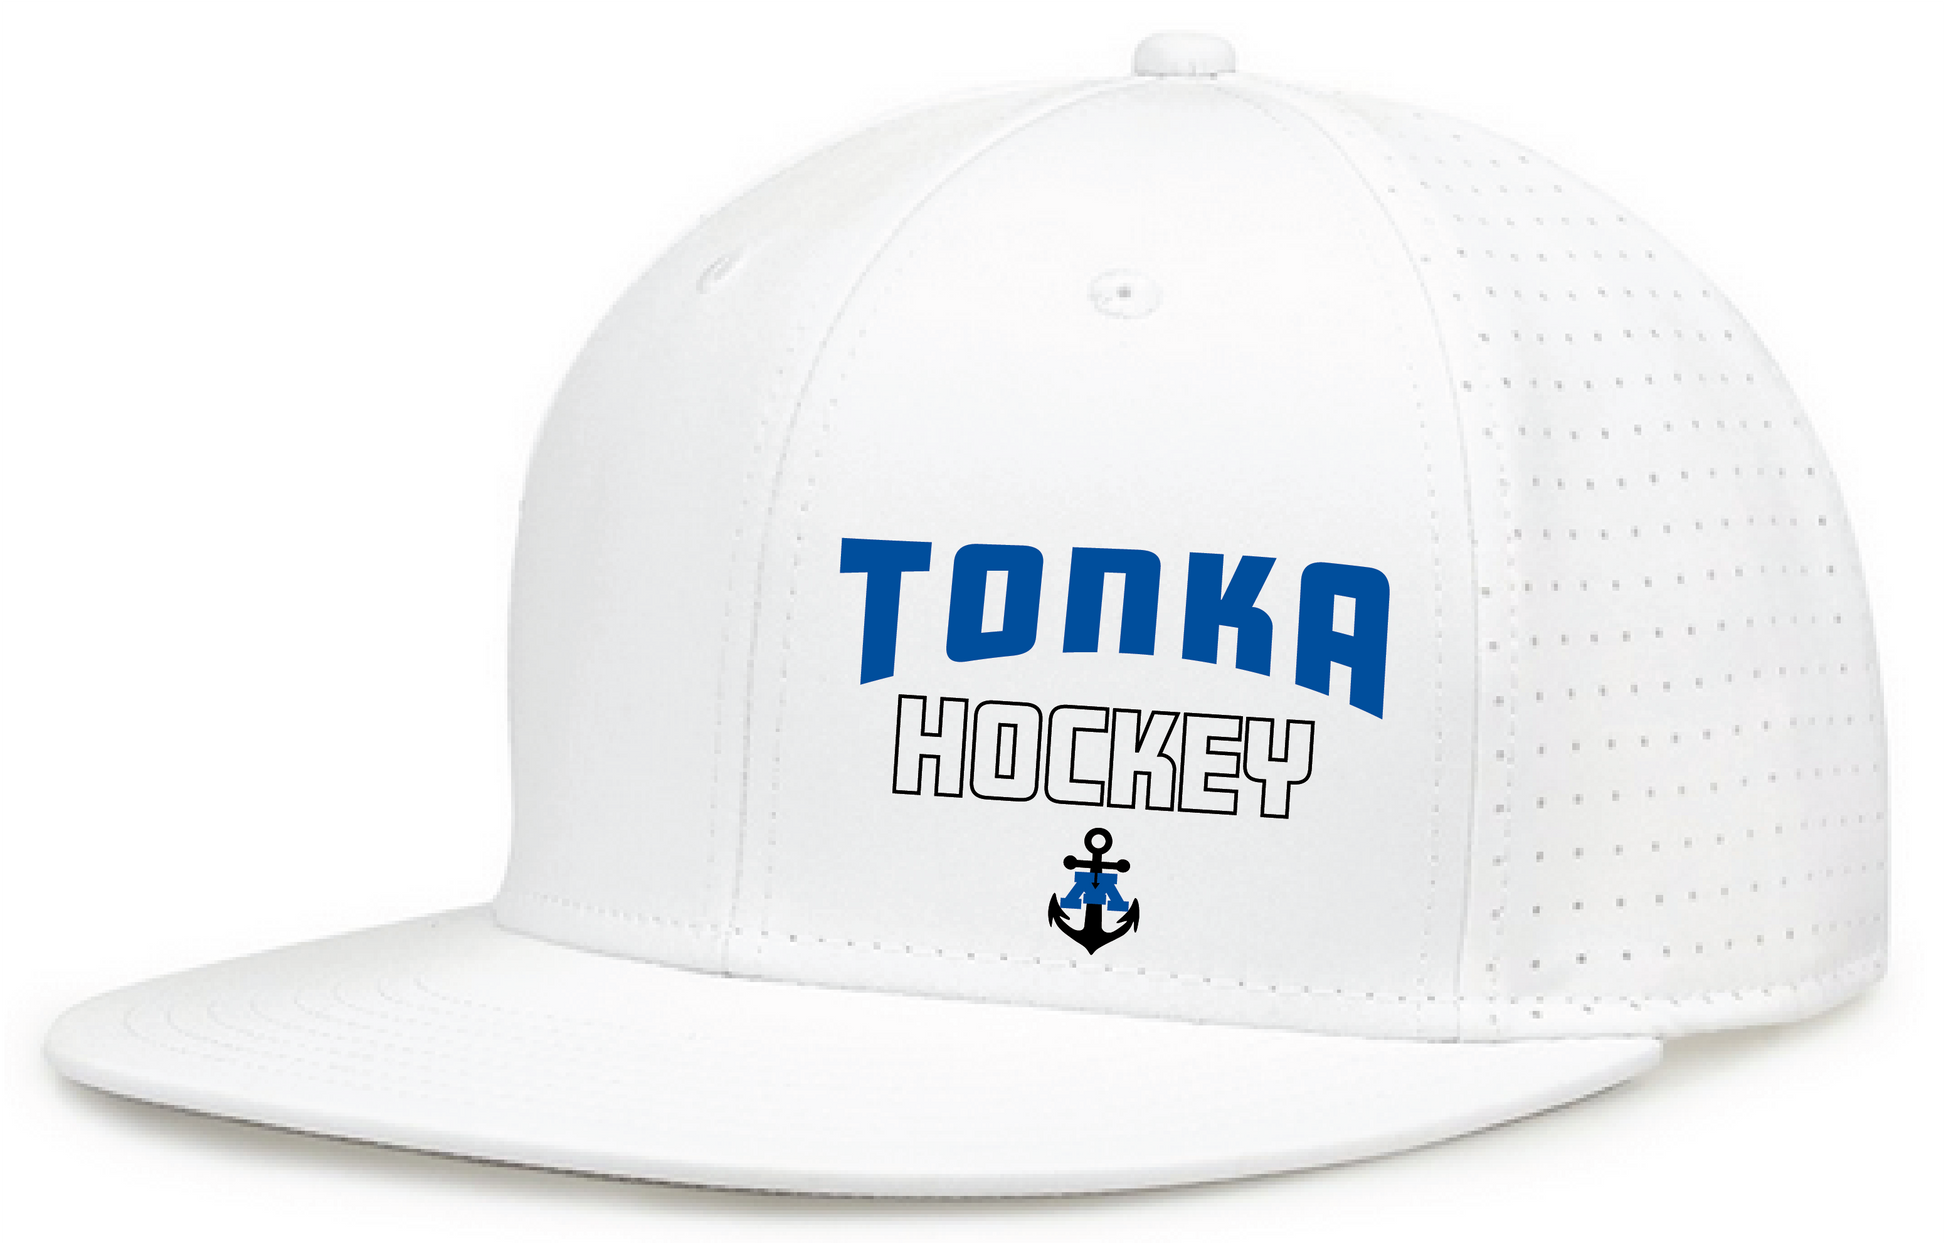 Tonka Hockey Small Anchor White